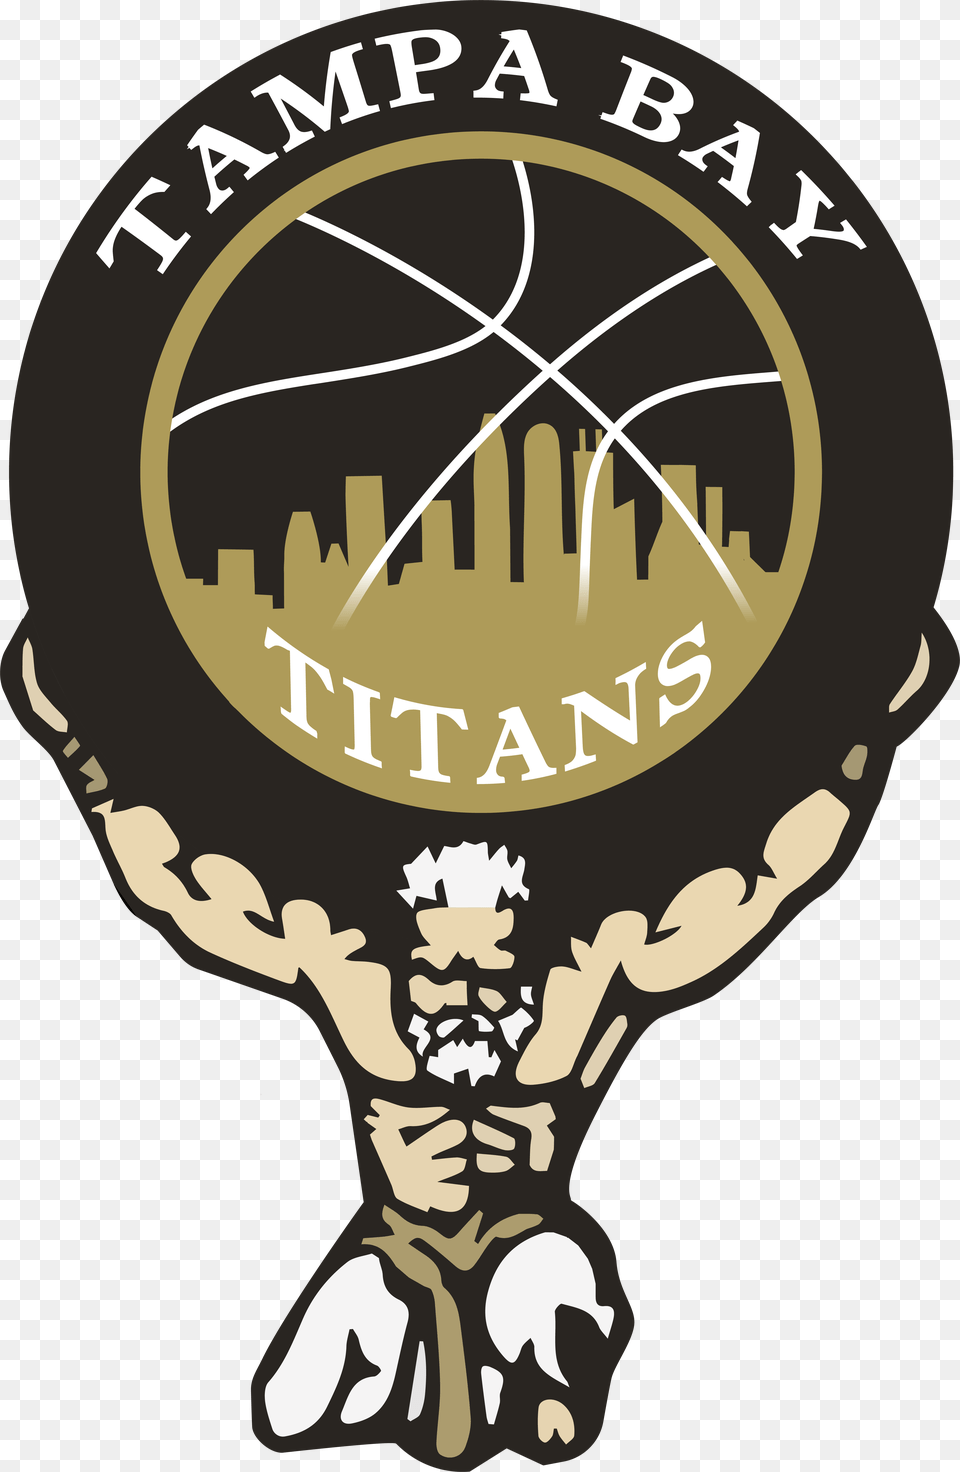 Tampa Bay Titans Logo, Badge, Symbol, Emblem, Ammunition Png Image